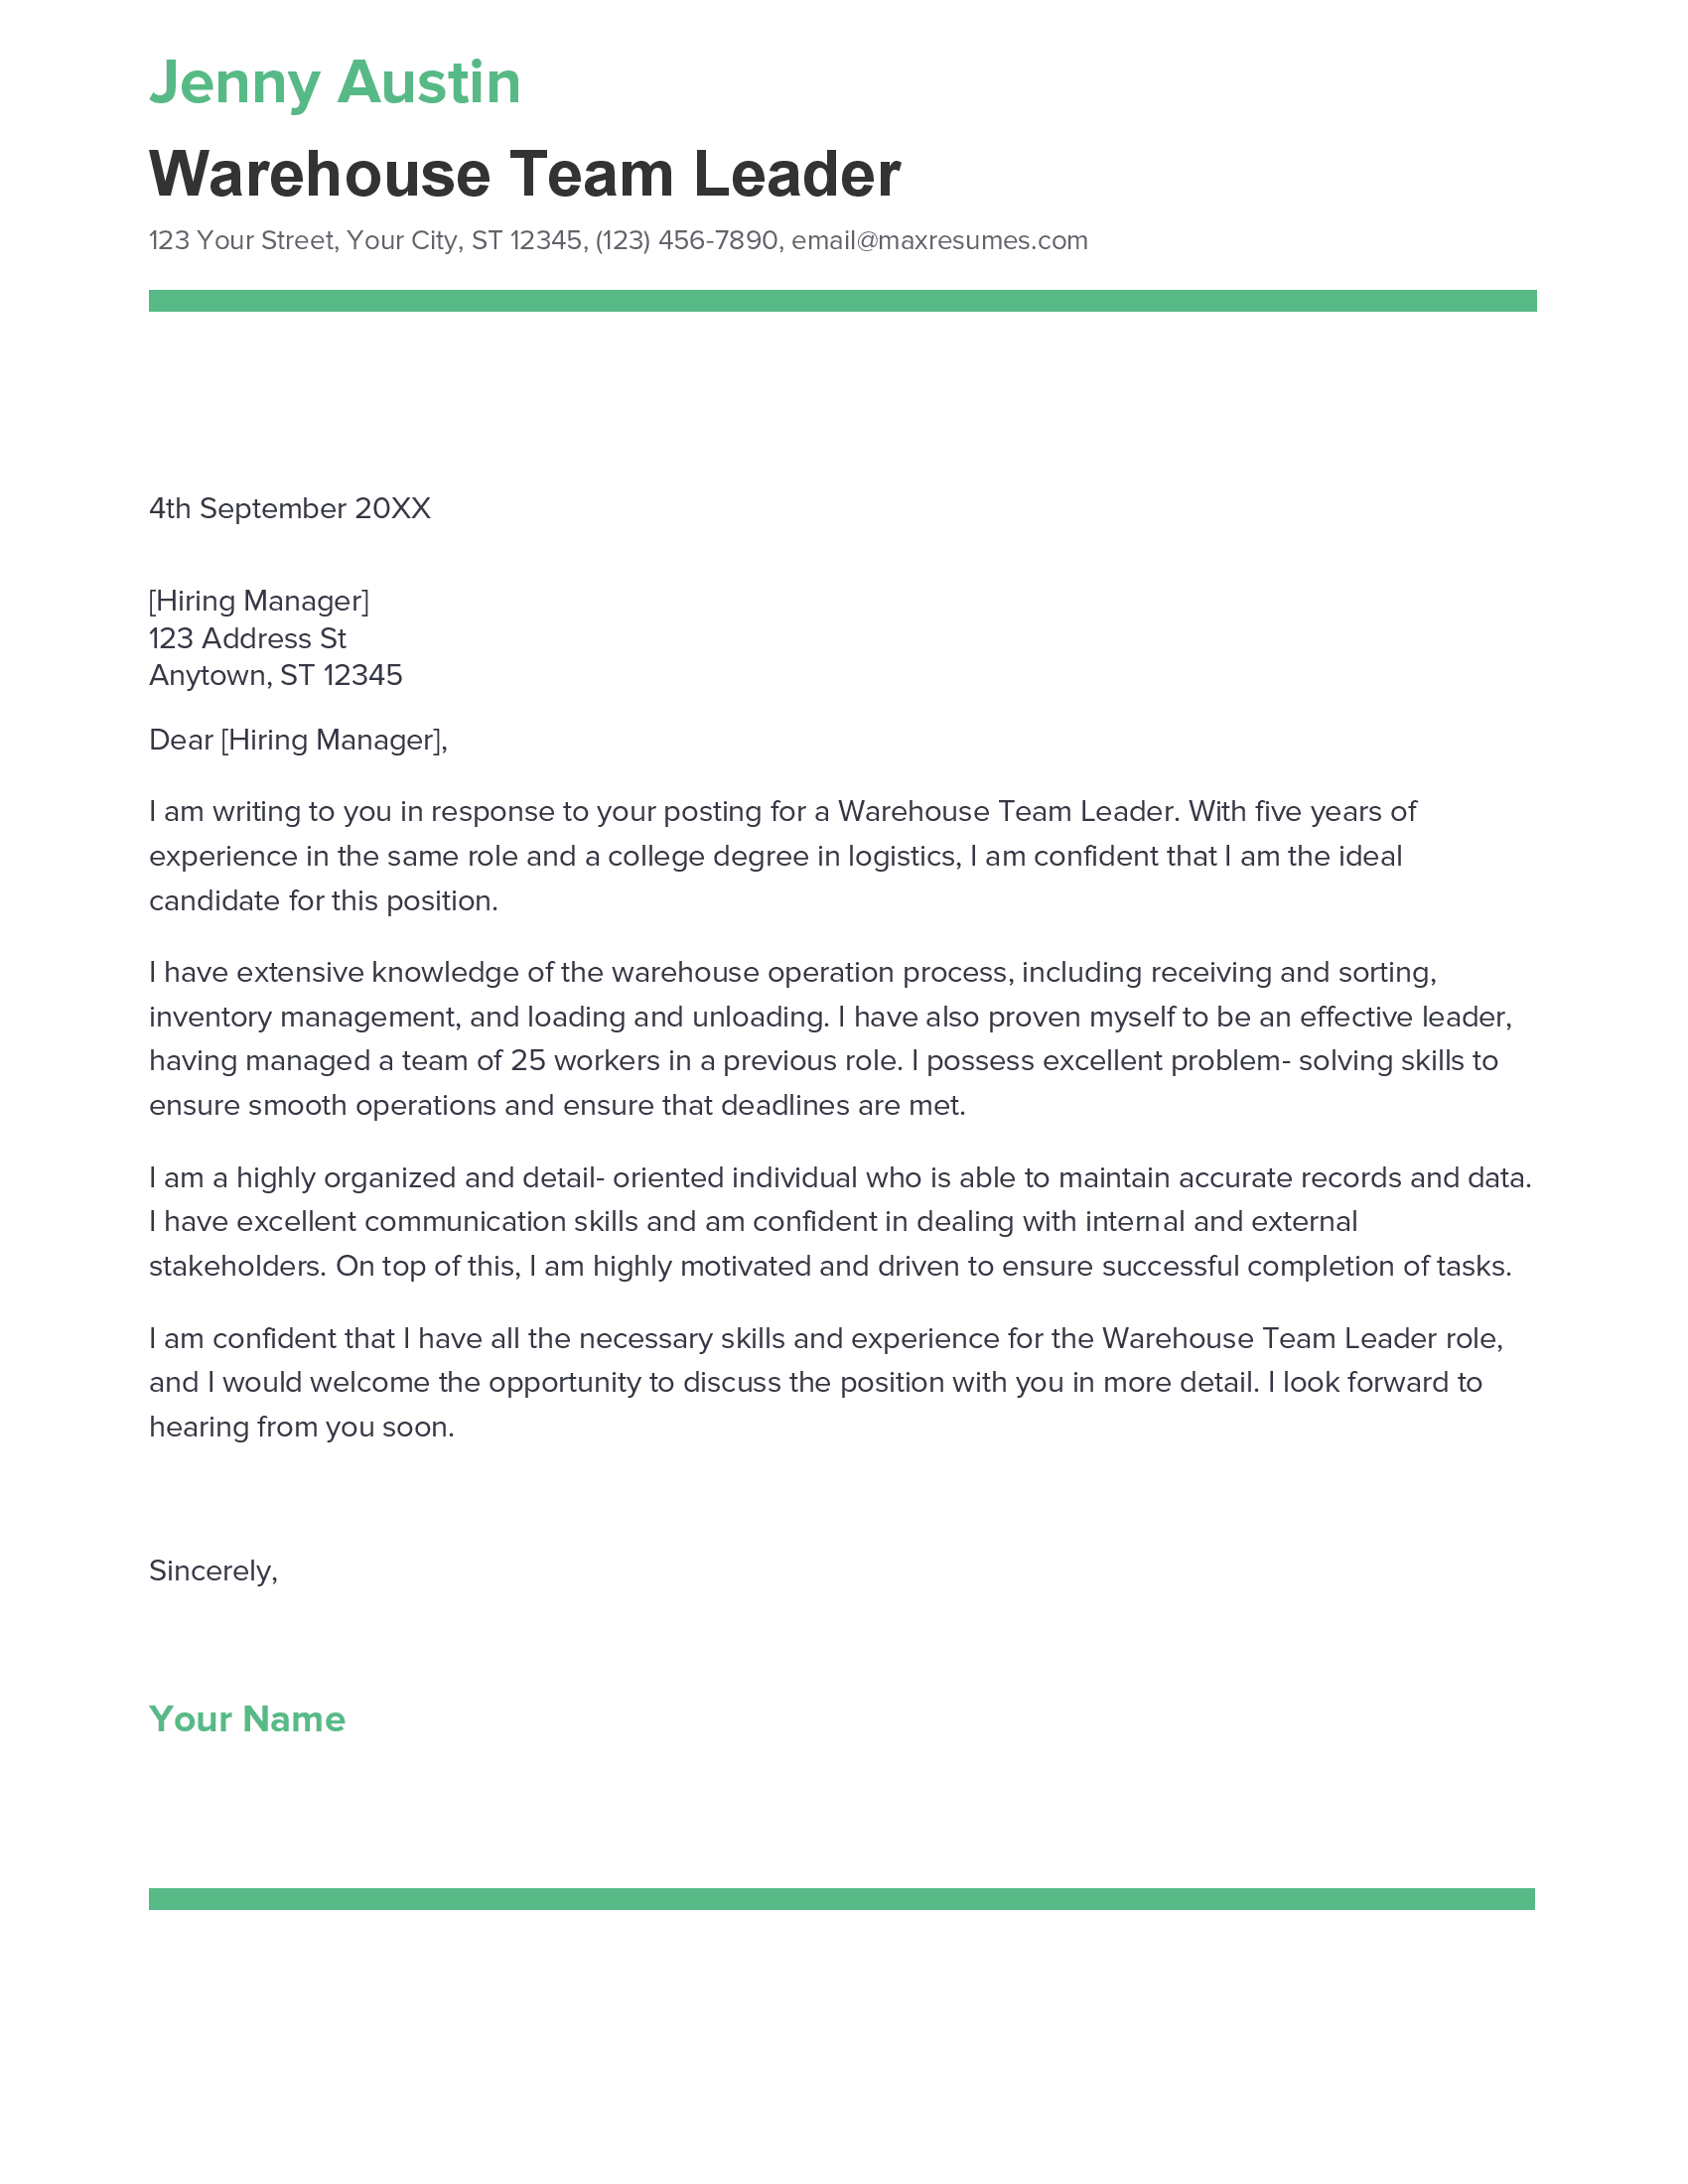 cover letter for warehouse team leader